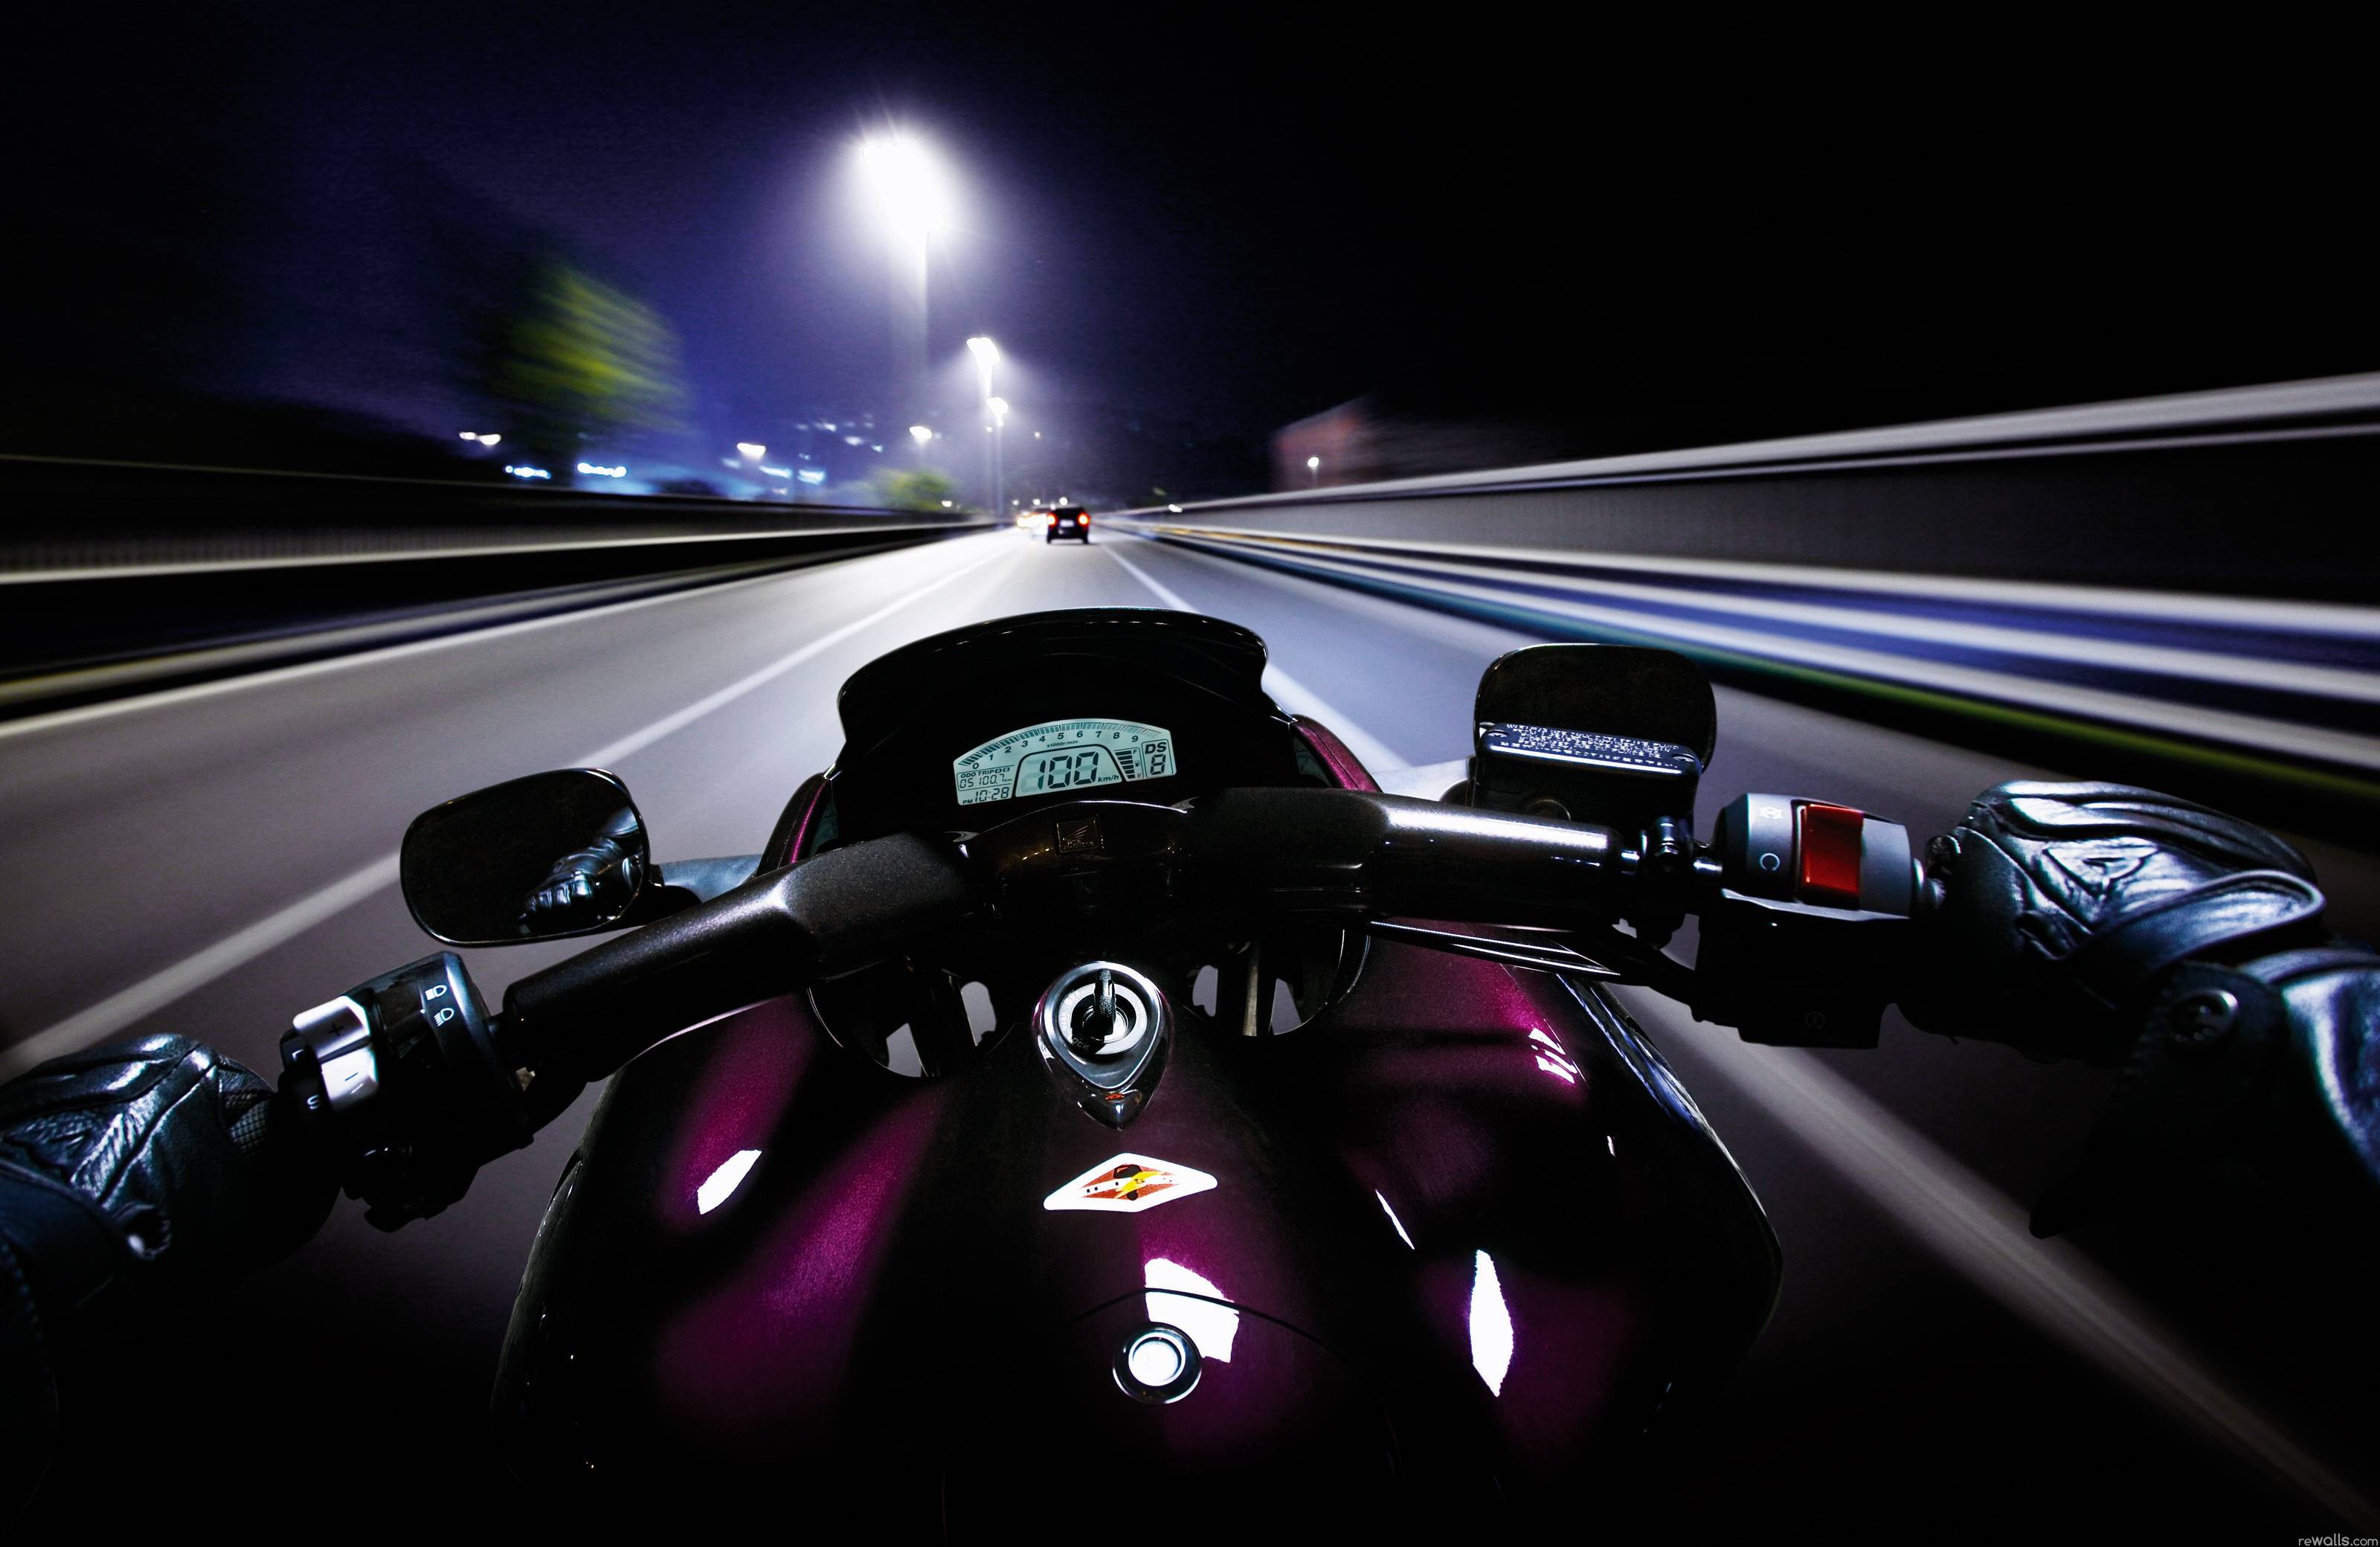 Motorcycle Desktop Wallpaper: Motorcycle Computer Wallpaper